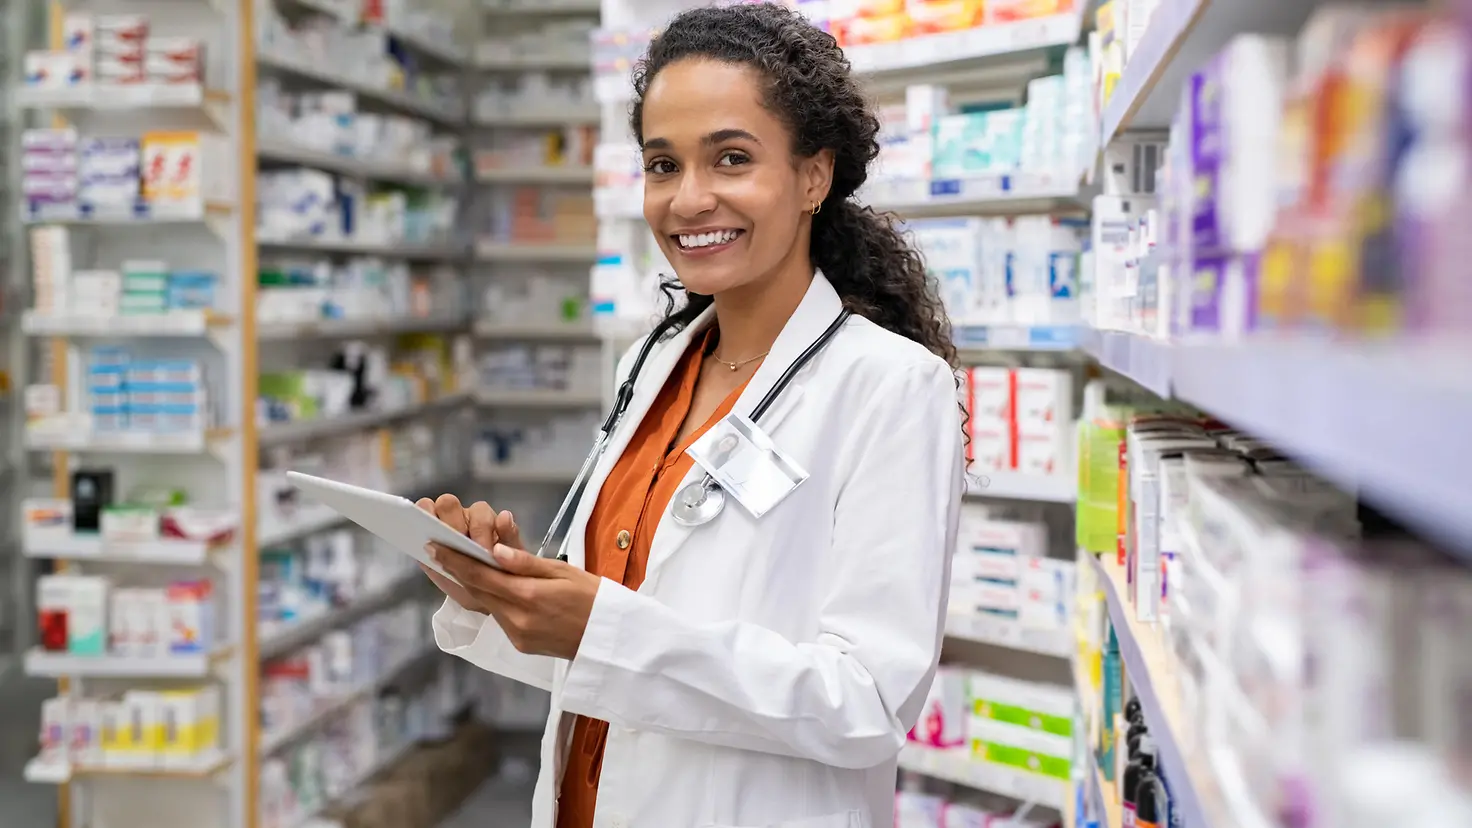 Eine Frau mit weißem Kittel und Stethoskop steht in einer Apotheke. Im Hintergrund sind Regale mit Medikamenten zu sehen.